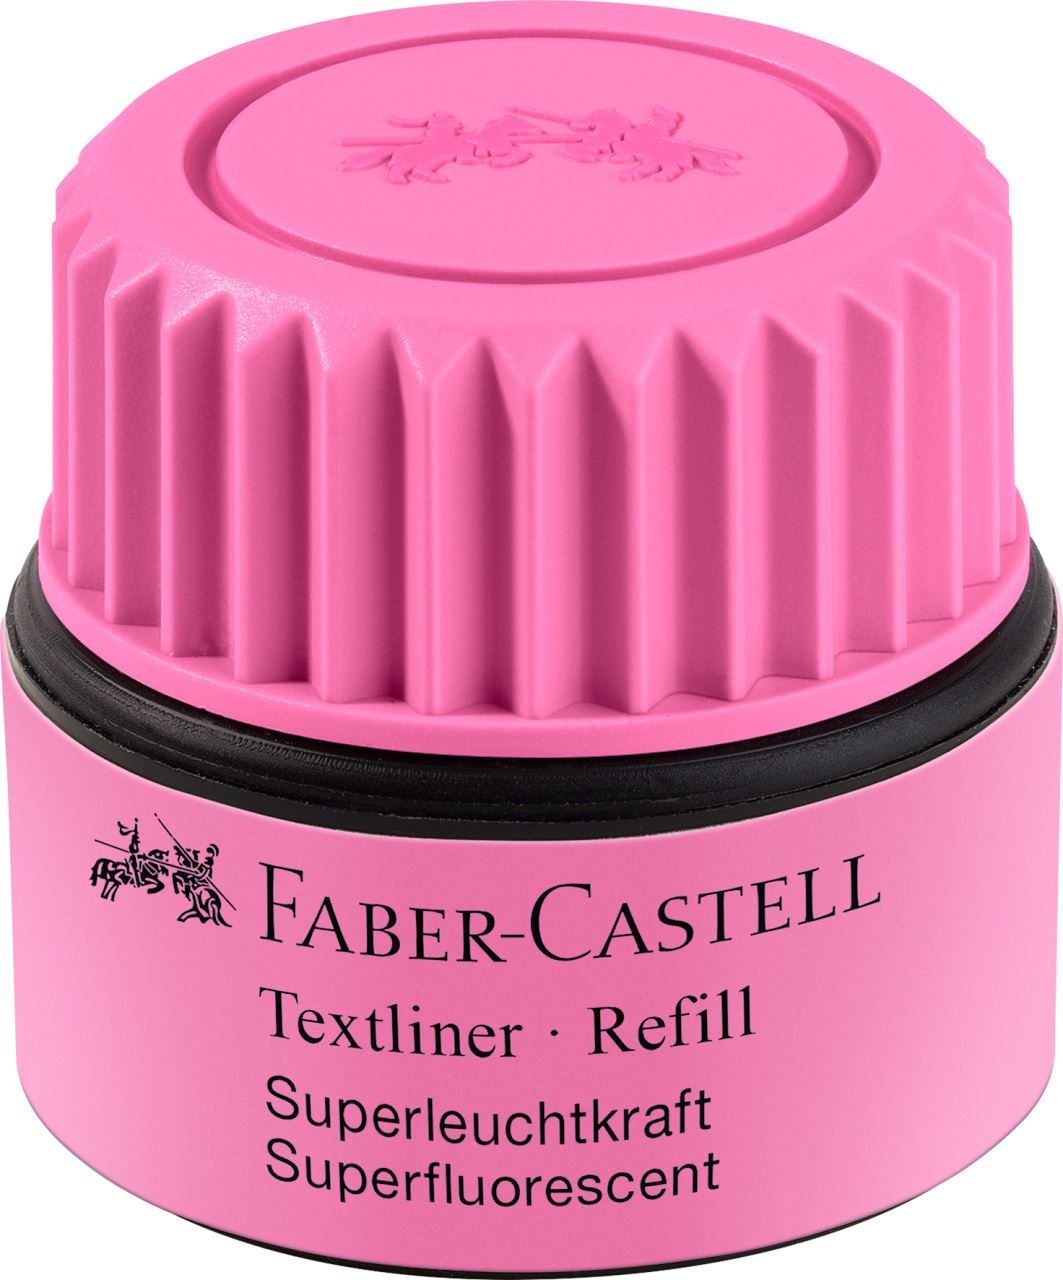 Faber-Castell - Textliner 1549 refill system, pink